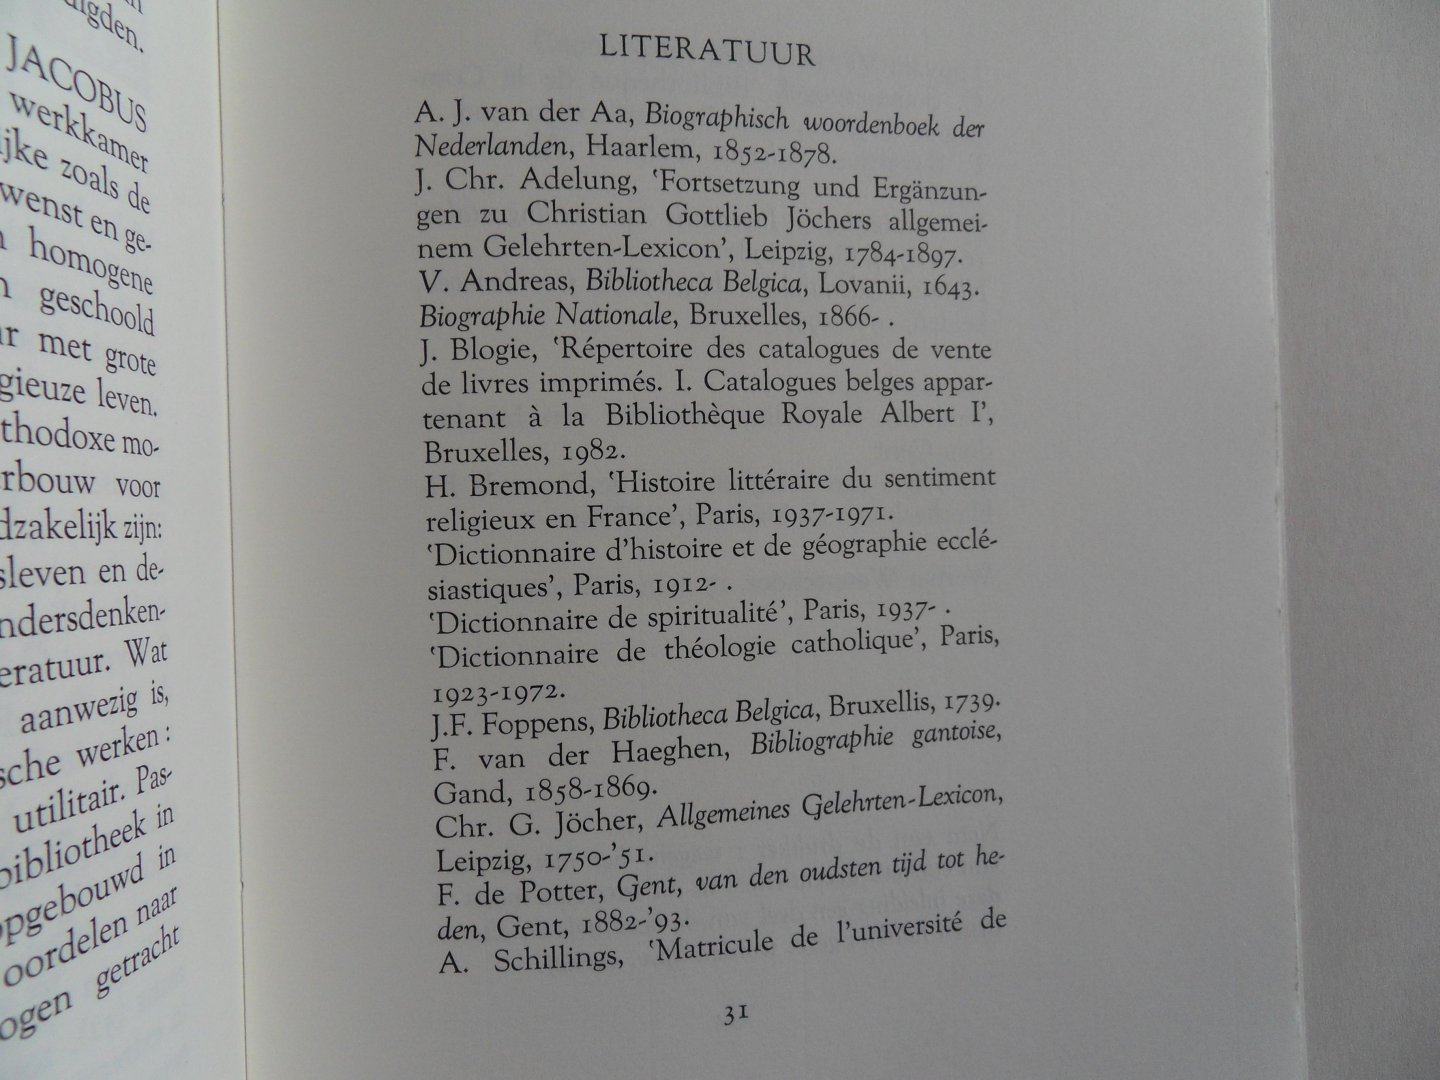 Waterschoot, Werner [ met een inleiding van ] [ GESIGNEERD door de inleider ]. - Catalogue van Boecken. - De veiling van de bibliotheek van Jacobus Pieron op 27 juni 1709. [ Genummerd exemplaar 36 / 60 = van de Arabisch genummerde exemplaren].